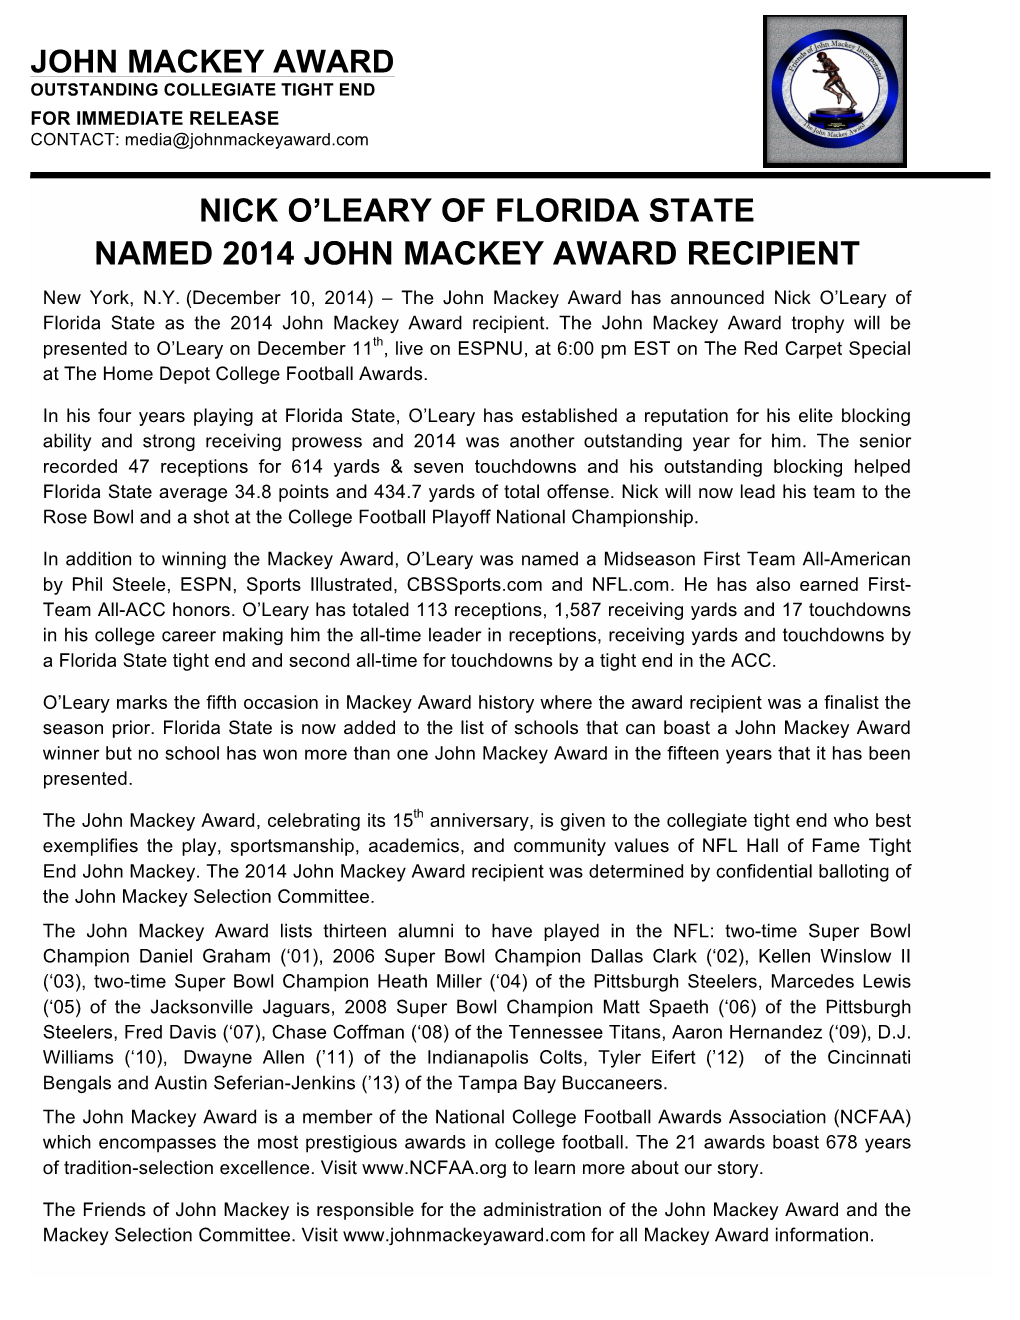 Nick O'leary of Florida State Named 2014 John Mackey